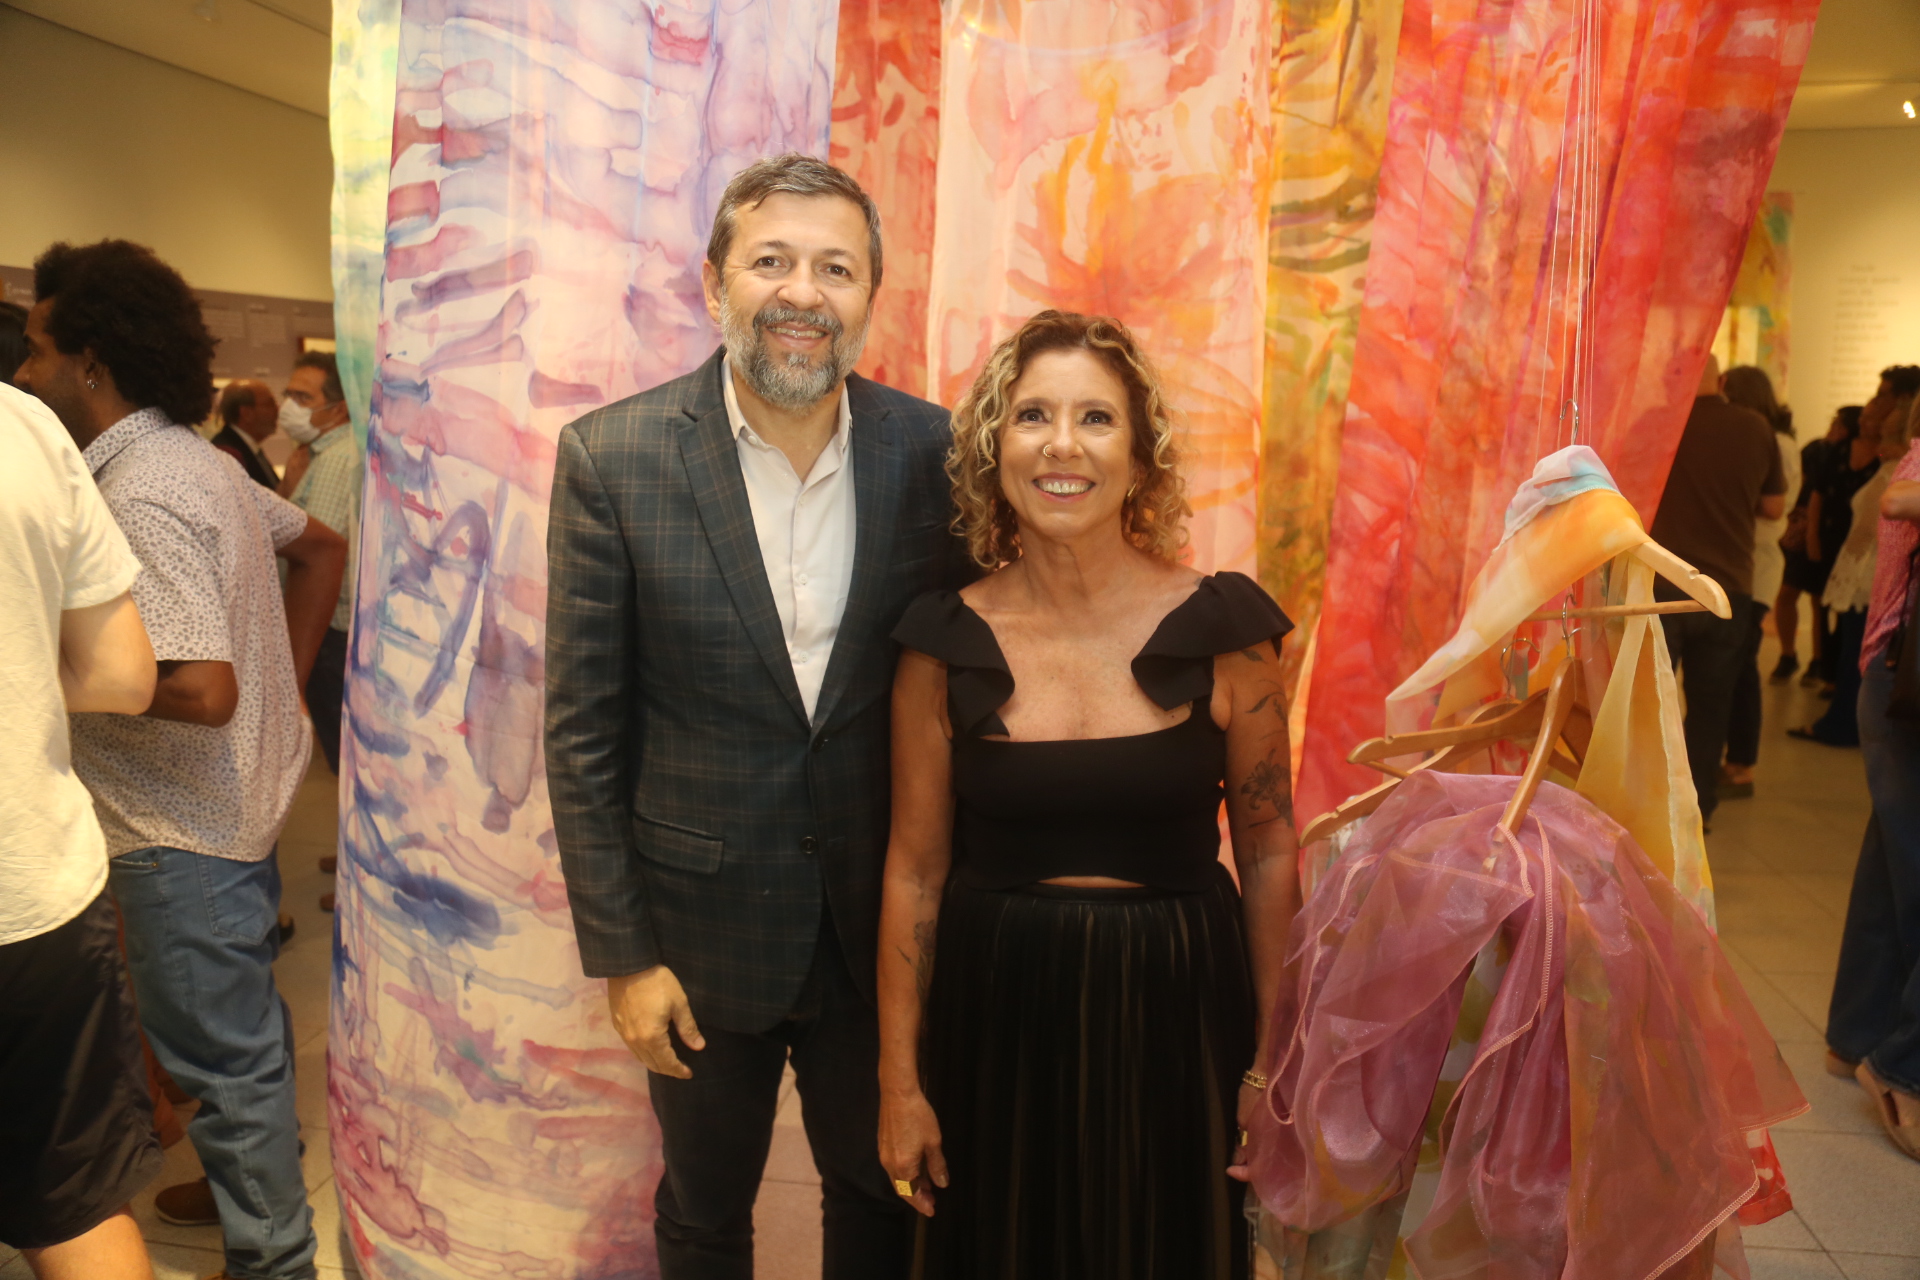 Sandra Montenegro recebe convidados ilustres na abertura da exposição “Estar Nesse Mundo”